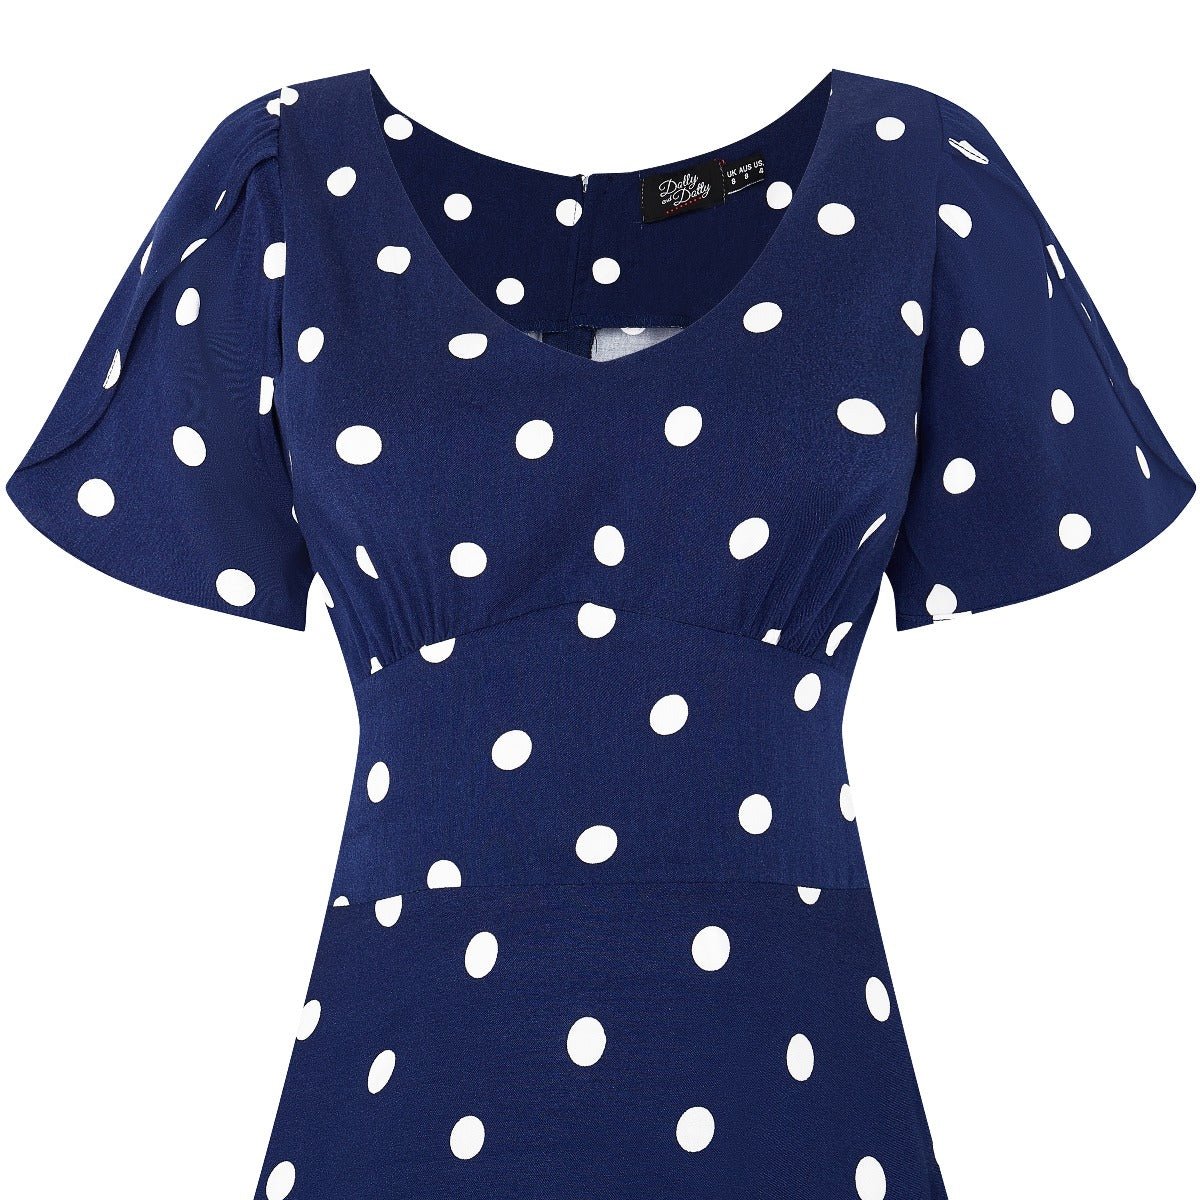 Janice Summer Dress in Dark Blue-White Polka Dot